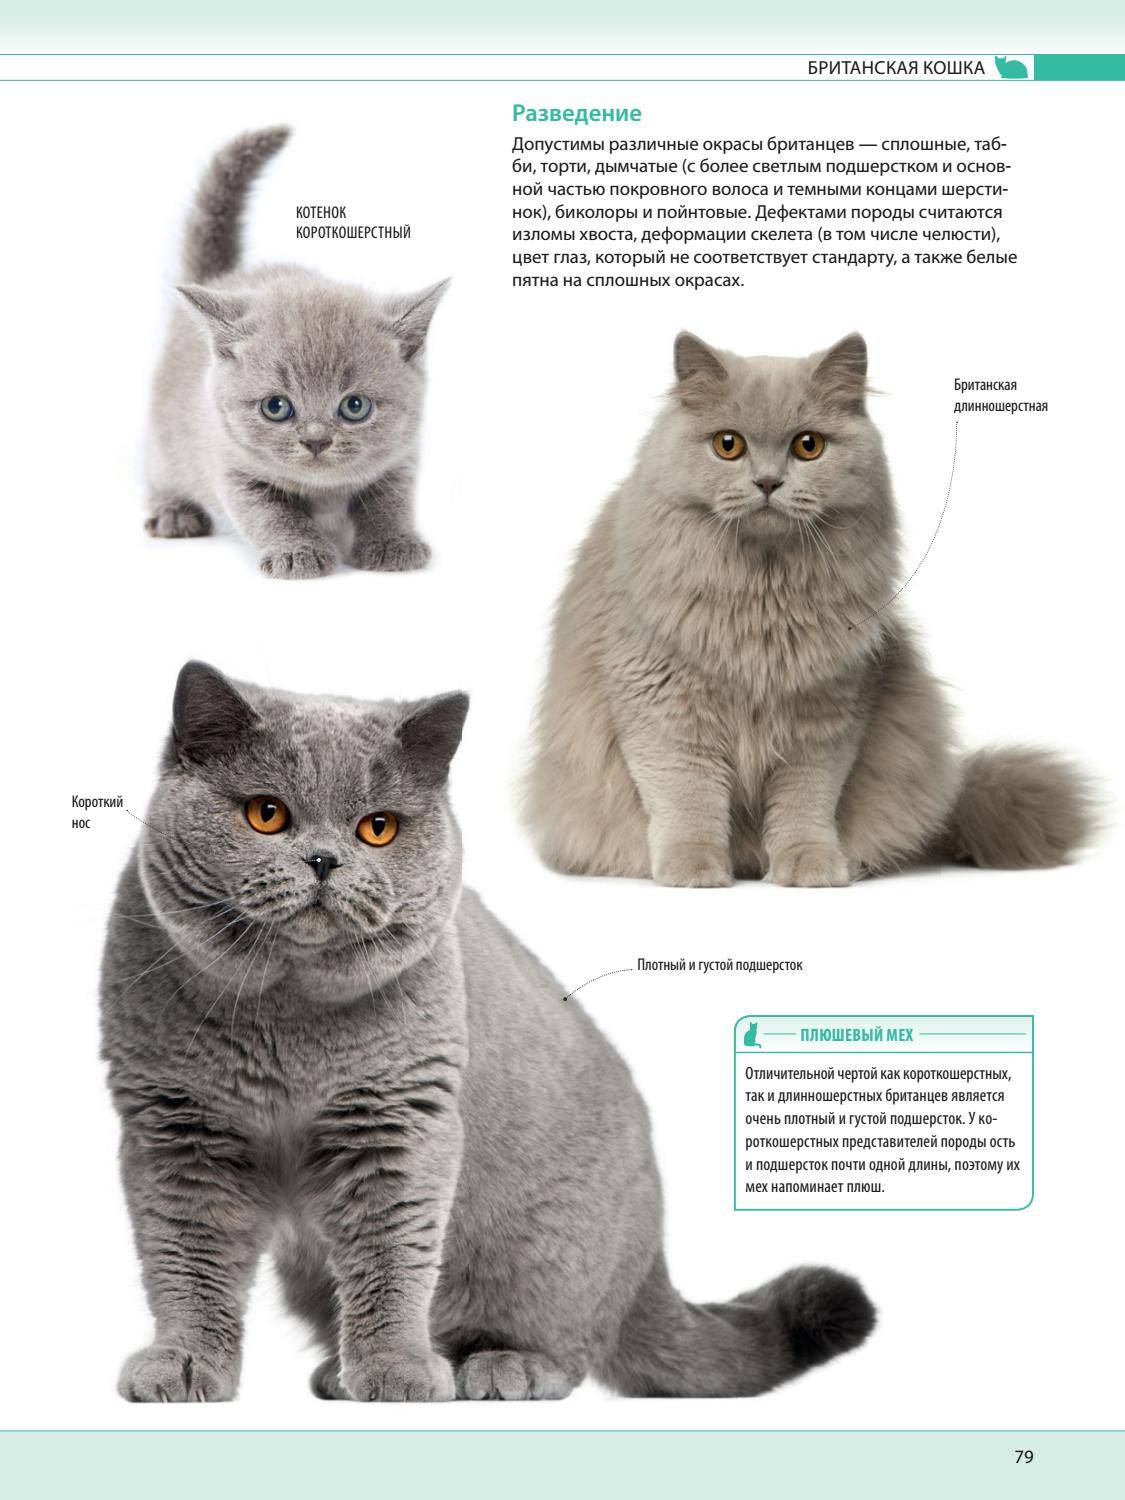 Размер домашней кошки. Британская порода кошек. Британская короткошёрстная кошка и Британская. Порода кошек Британская короткошерстная. Британская короткошёрстная кошка голубая порода и описание.